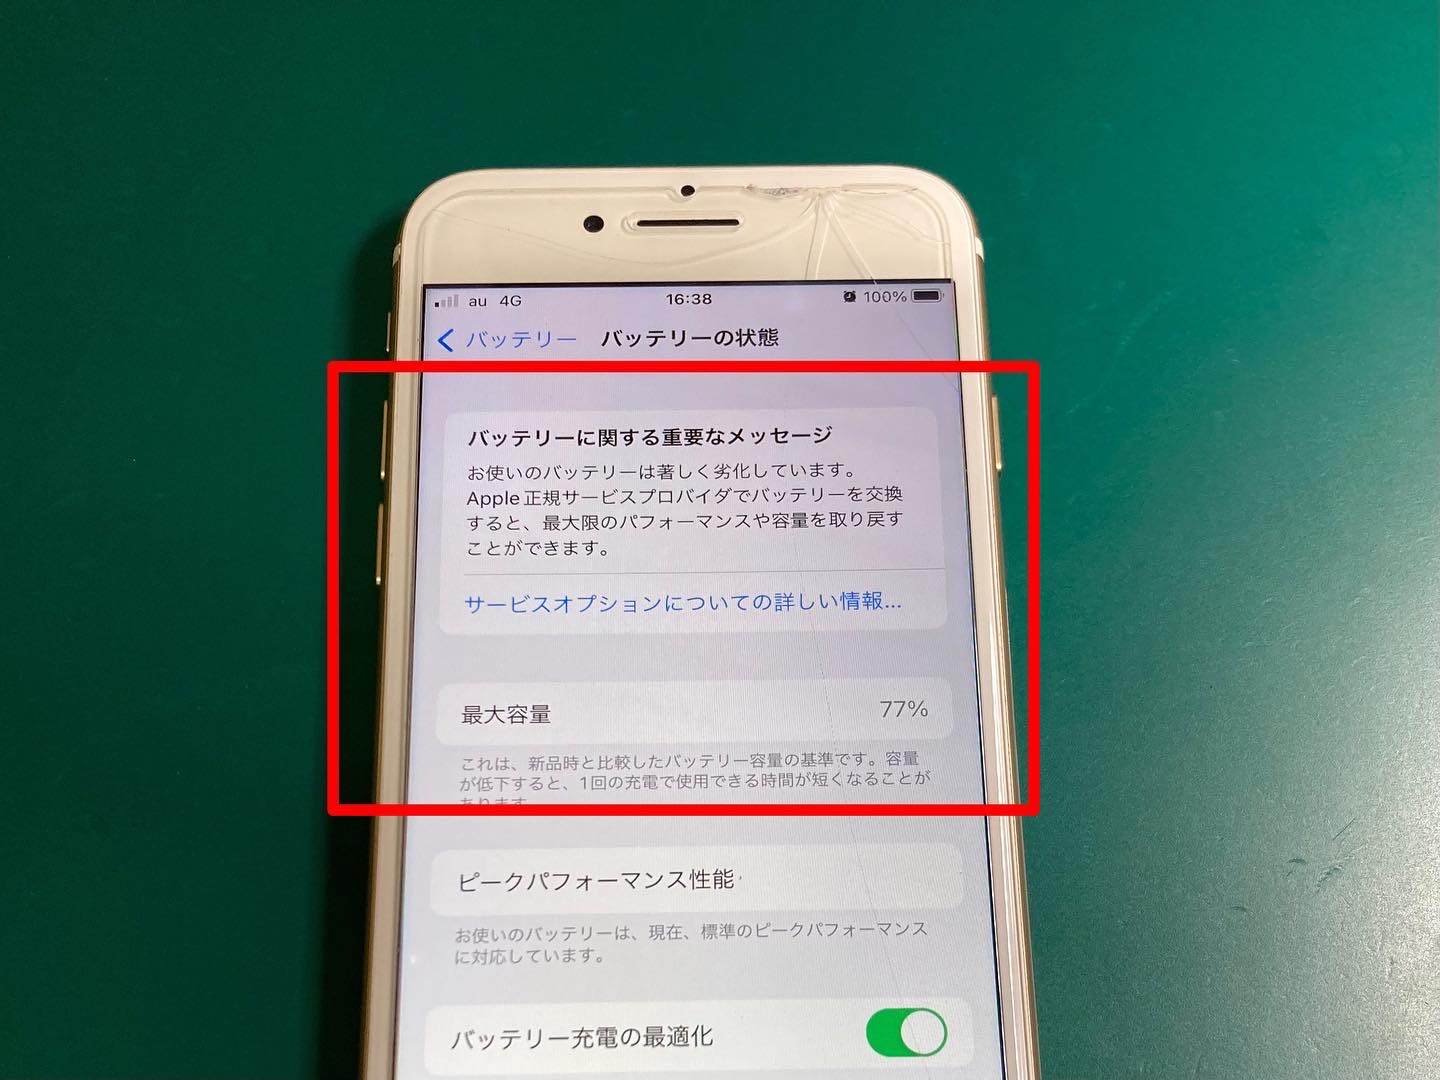 バッテリー劣化の警告が出ているiPhoneバッテリー交換修理作業時間40分〜お気軽にご相談ください。